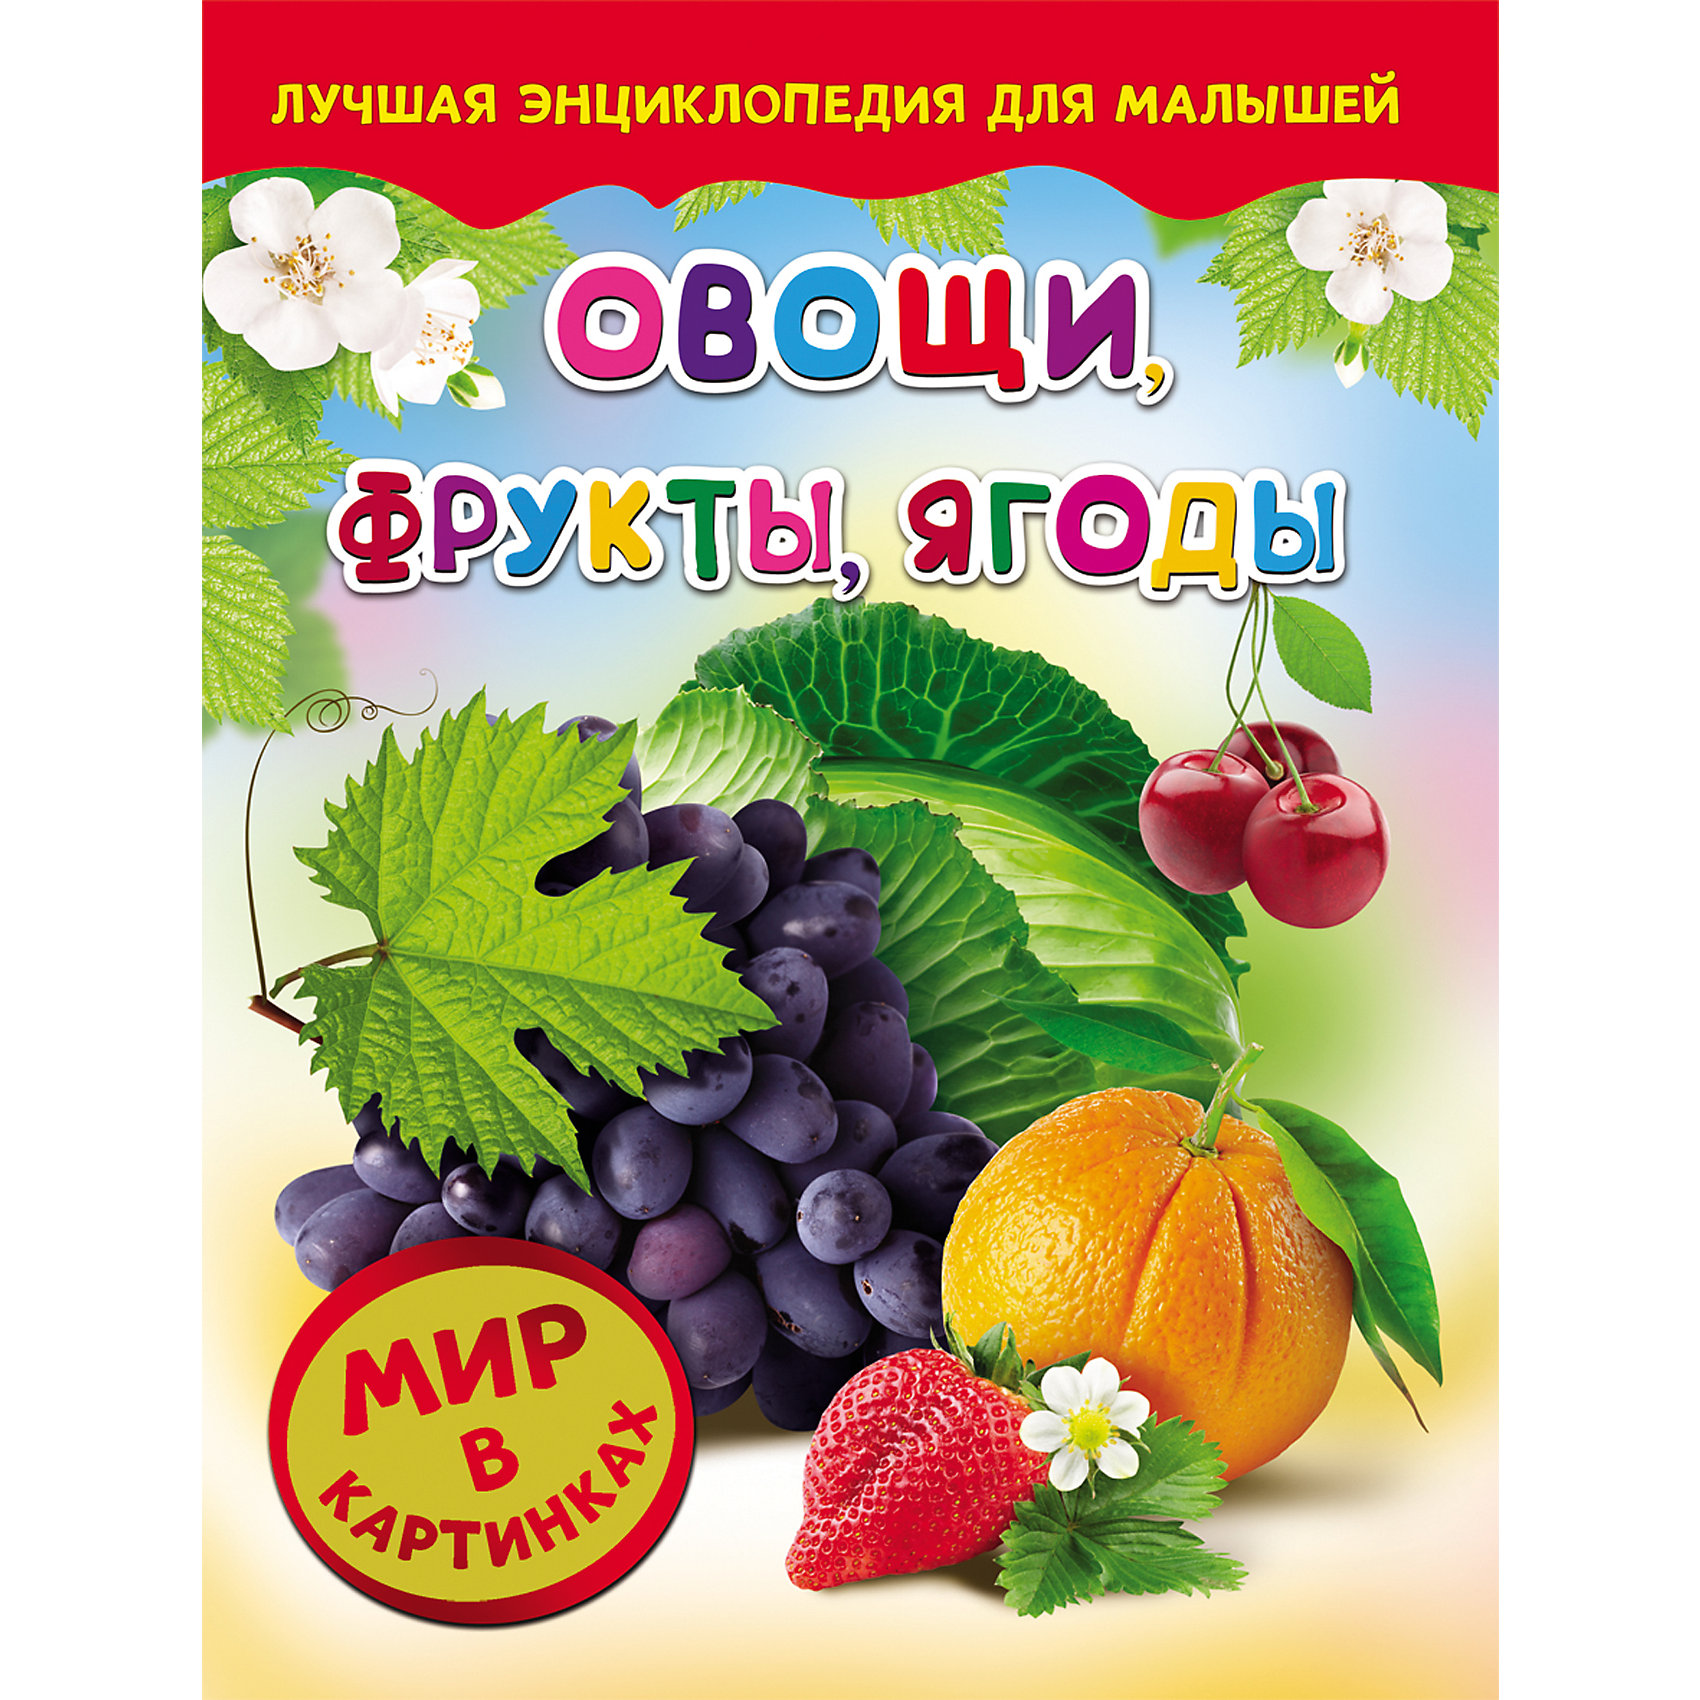 Книжки про овощи и фрукты для детей